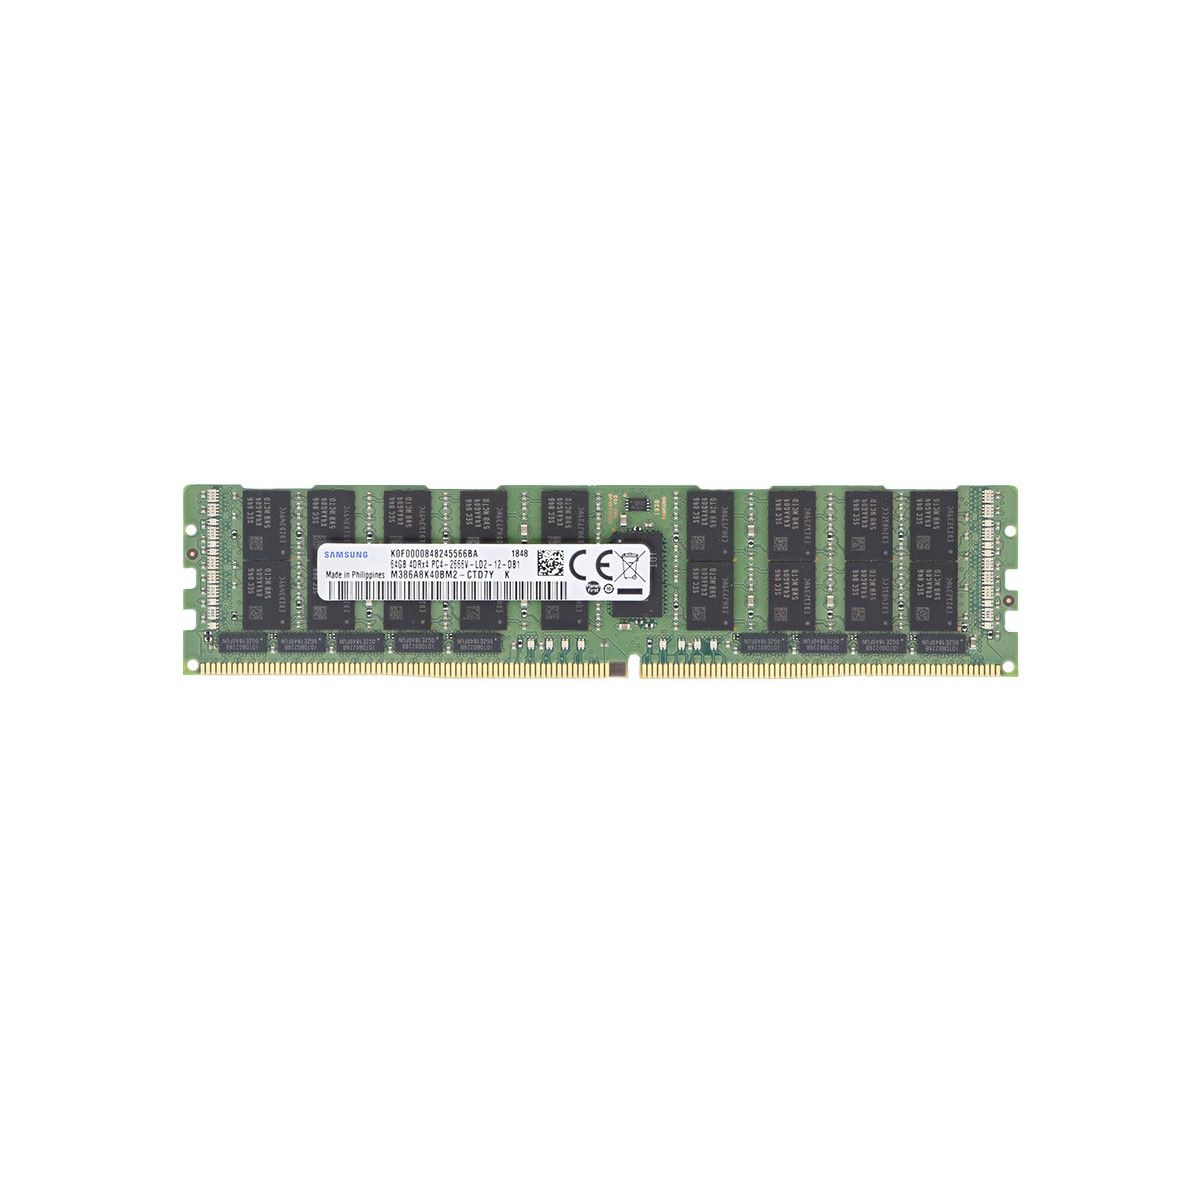 A8711890-MS - Memstar 1x 64GB DDR4-2400 LRDIMM PC4-19200T-L - Mem-Star OEM compatibile Memoria 1 - Memstar 